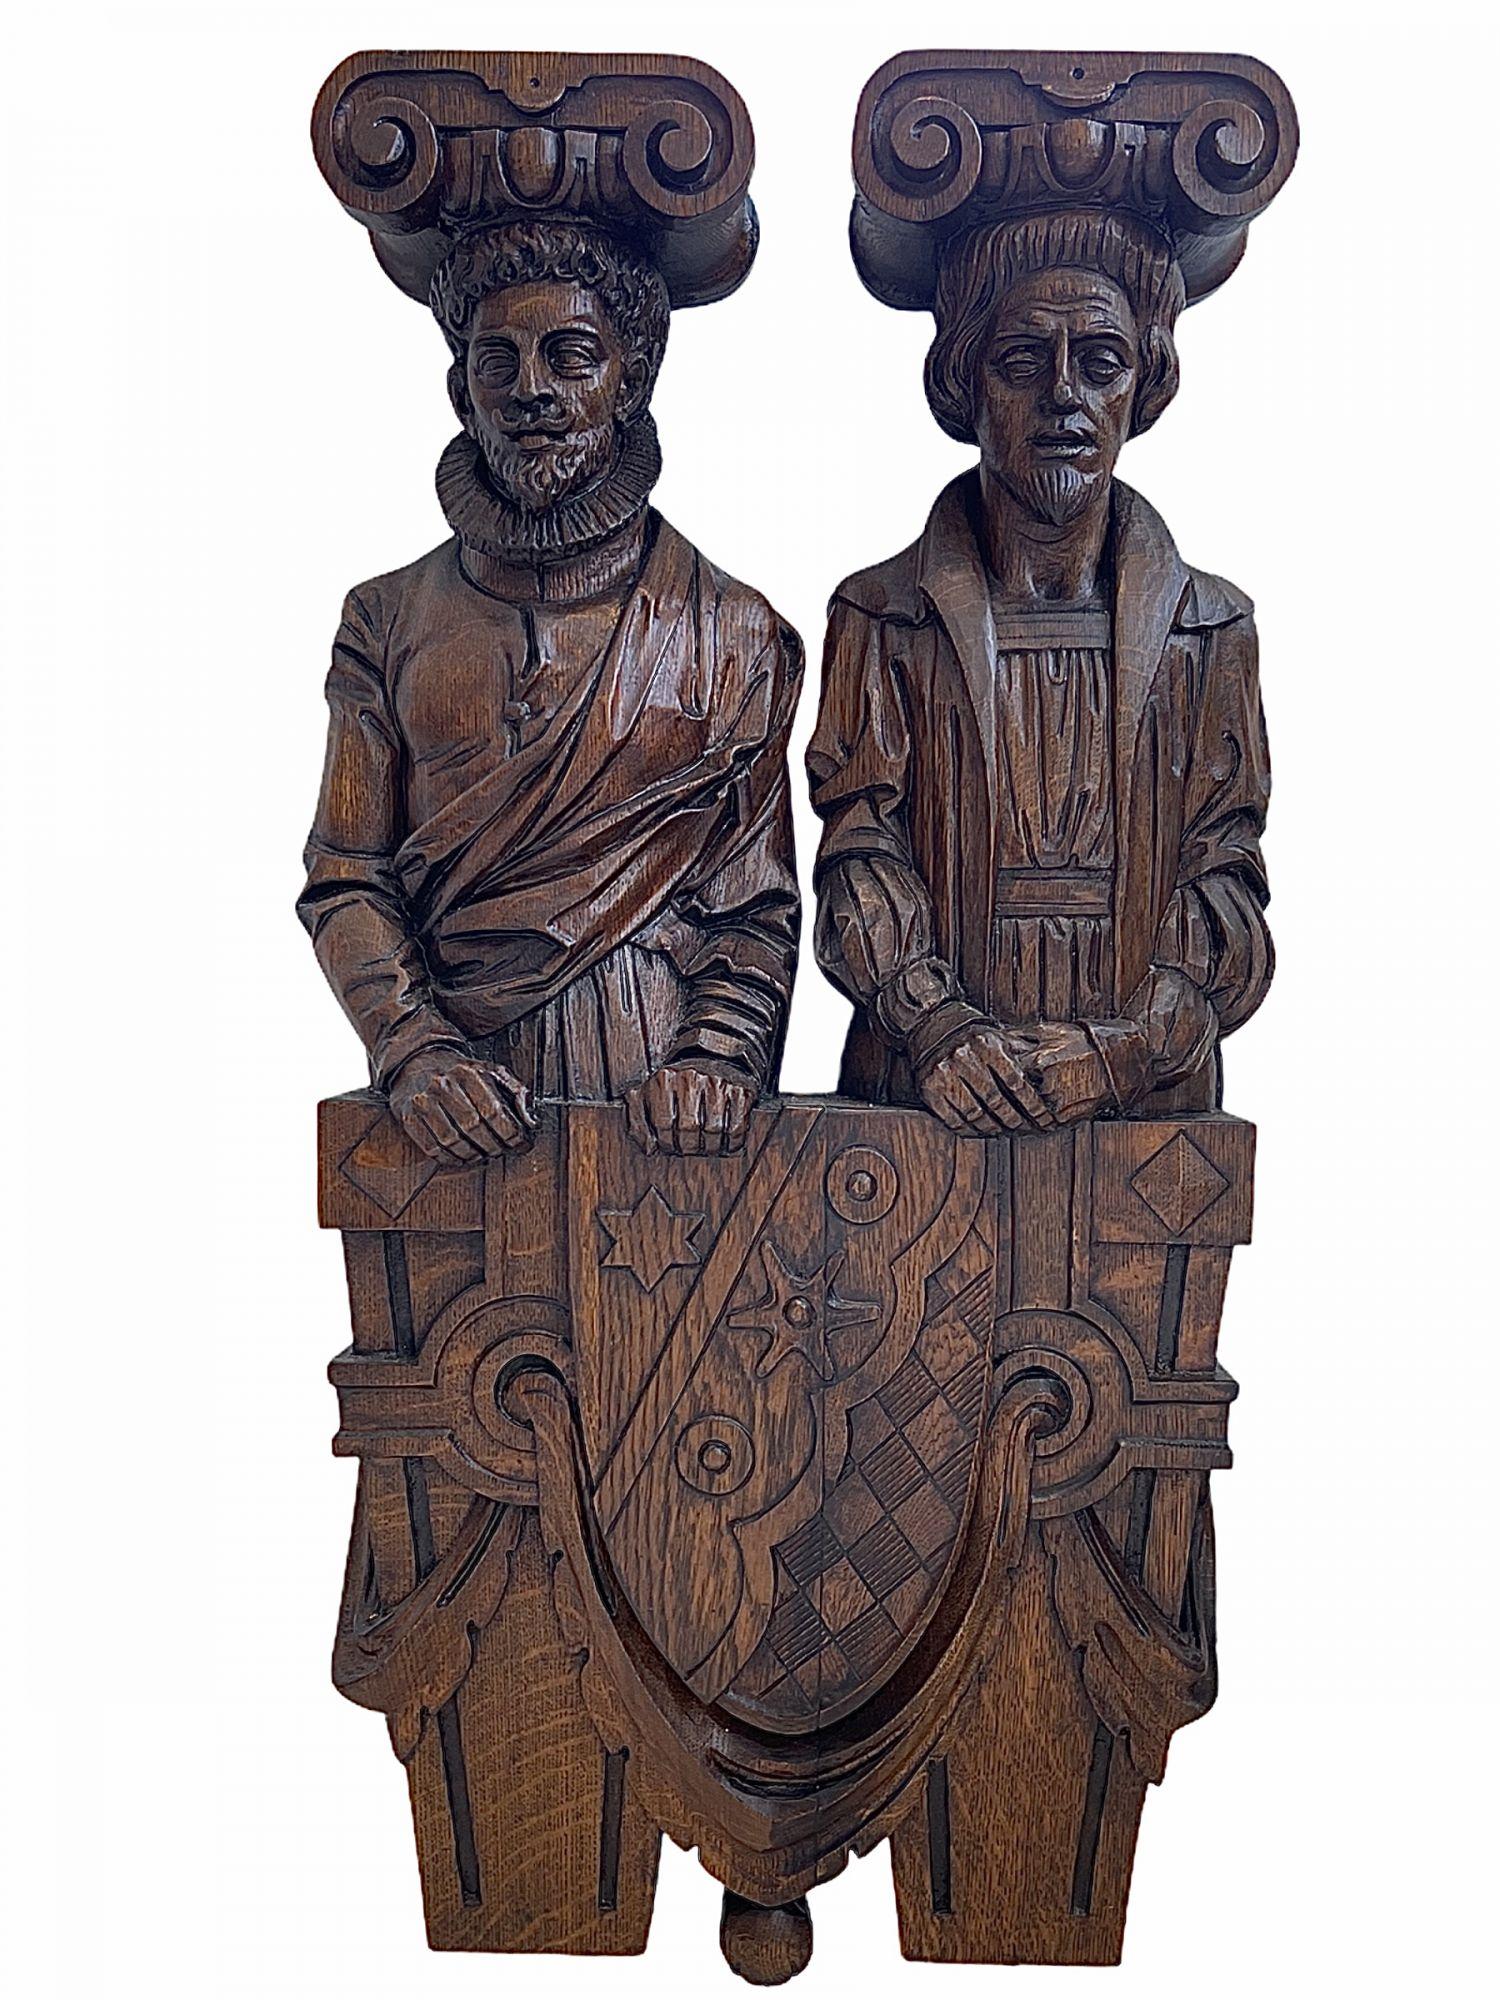 Diese beiden geschnitzten Holzstücke sind von höchster Qualität. Sie waren Teil eines sehr bedeutenden deutschen Bibliothekszimmers in einem Schlösser aus dem frühen 19.